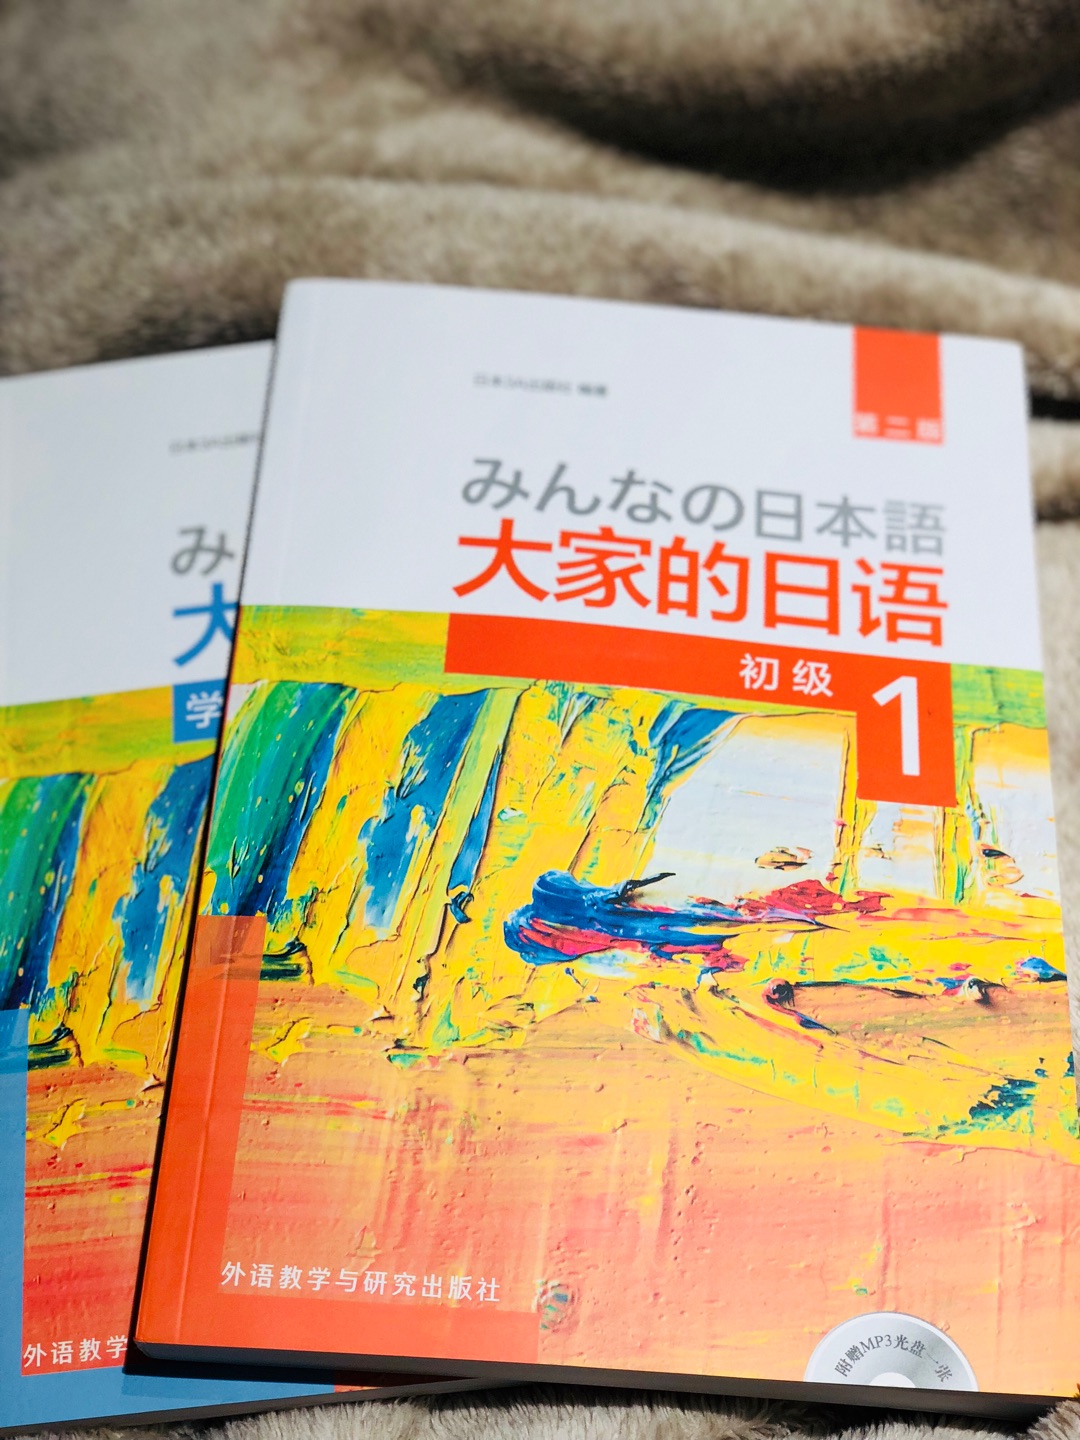 书很棒！印刷很好 划算 终于要开起日语之旅啦